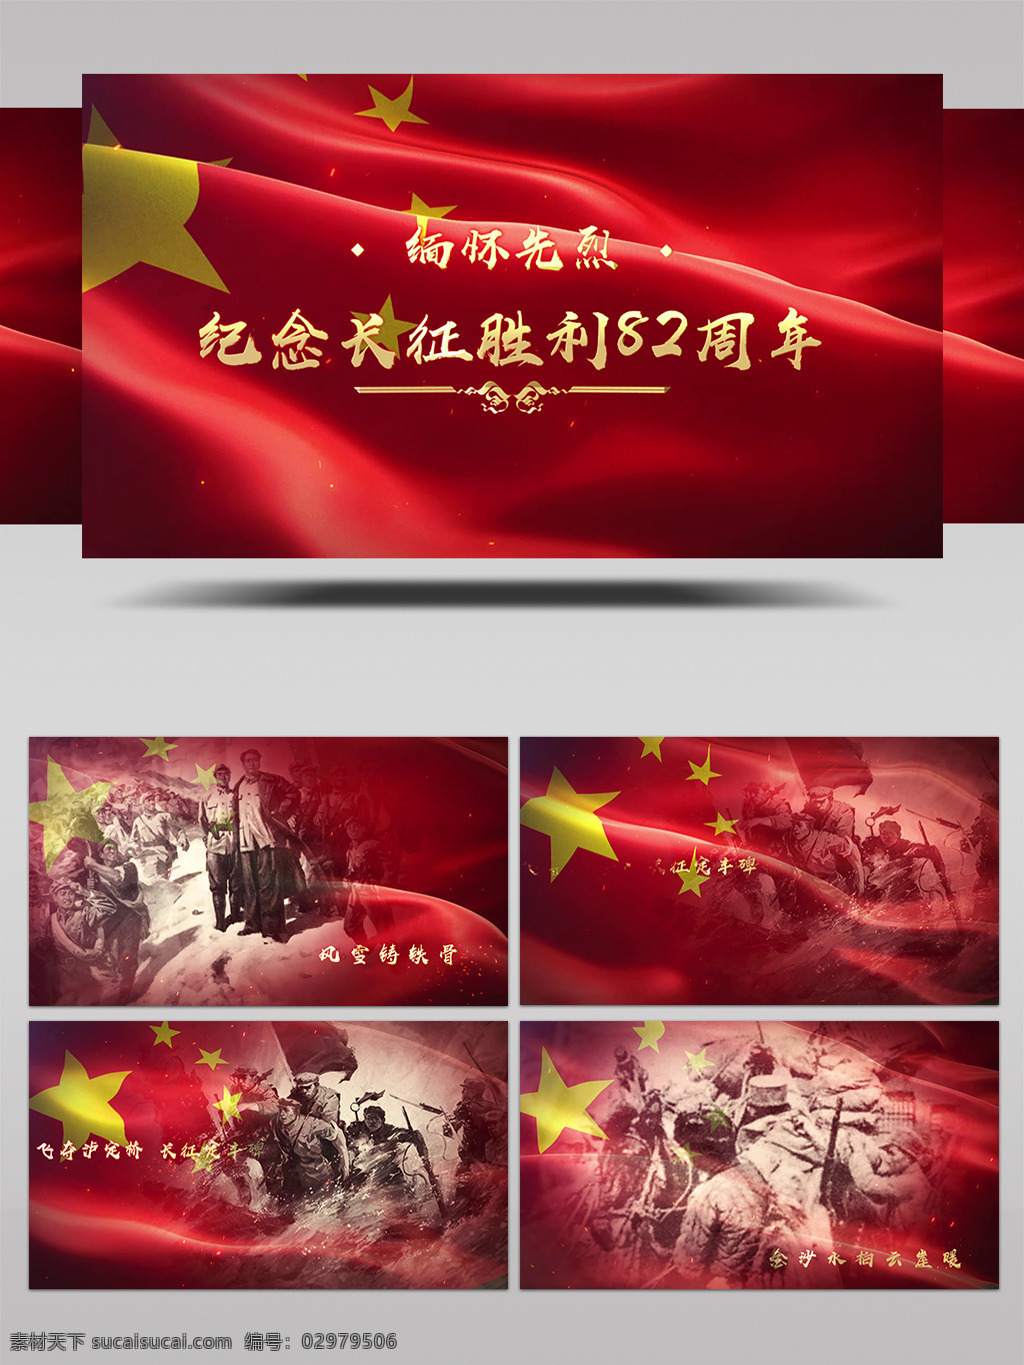 长征 胜利 周年 缅怀 先烈 ae 模板 中国梦 中国红 纪念 历史 革命 中国强 回顾 烈士 先辈